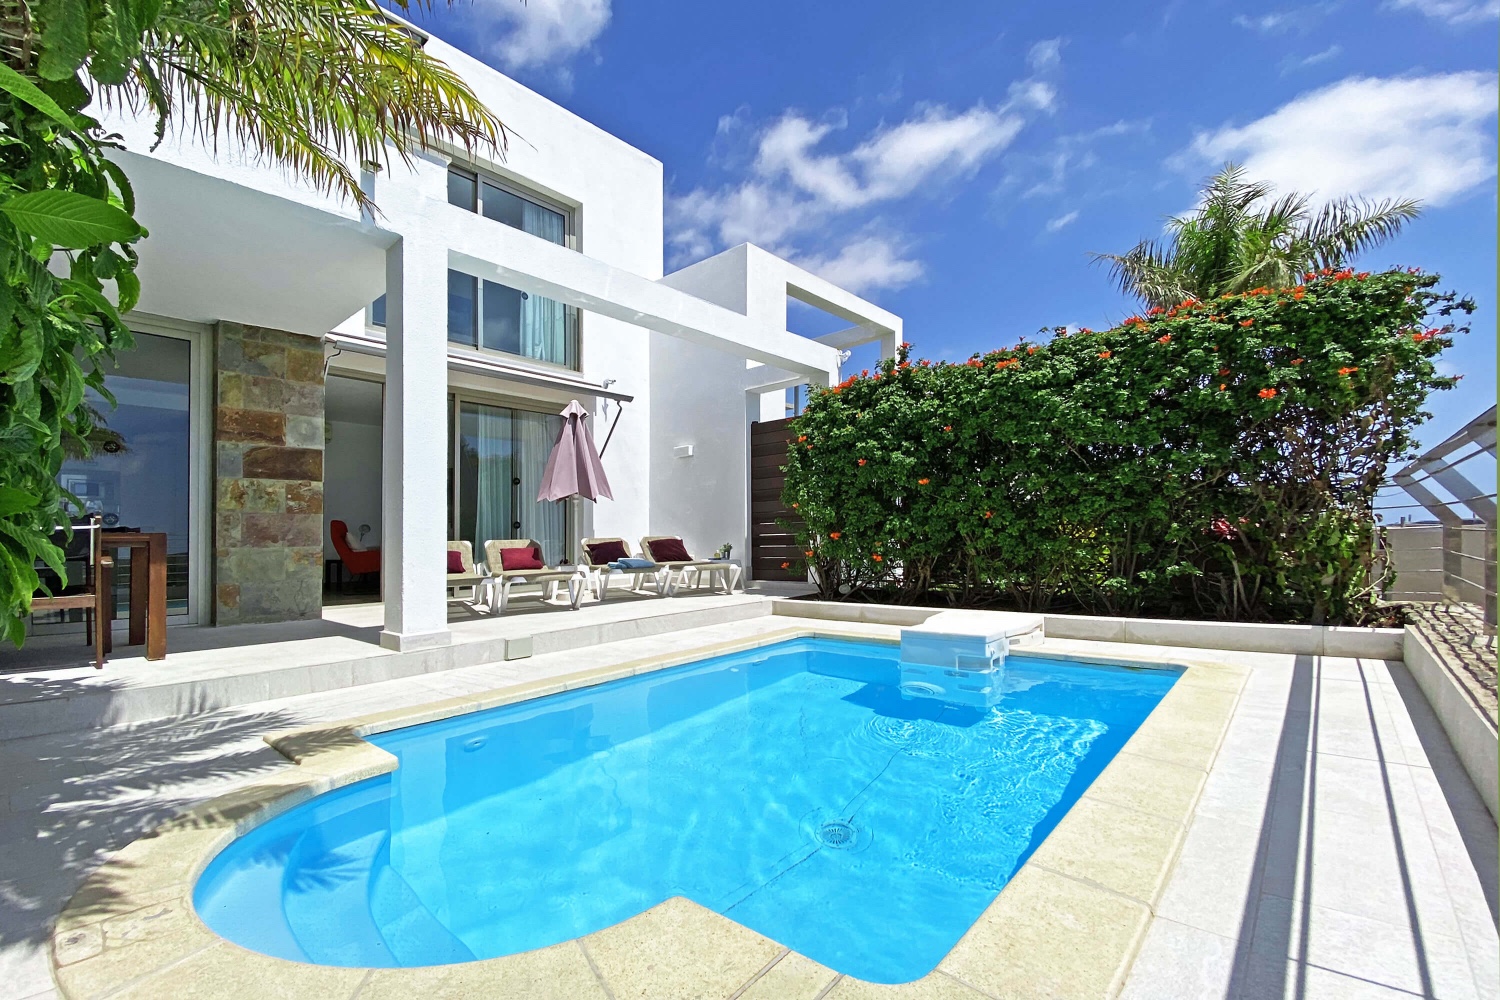 Luxueuse maison de vacances avec piscine privée située sur le parcours de golf de Salobre au sud de Gran Canaria, Villa Golfers 12.